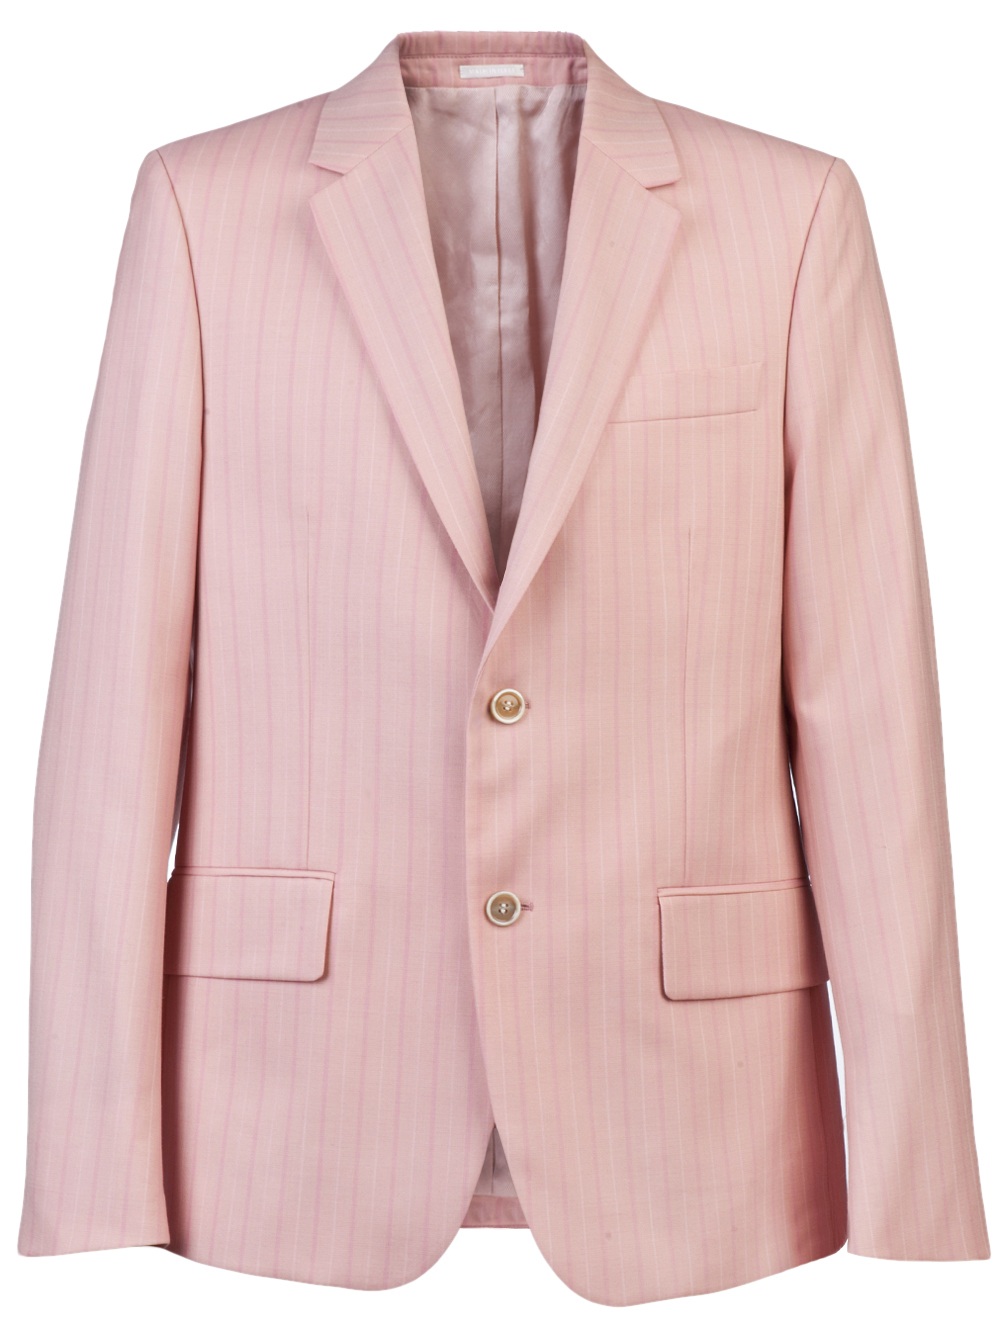 Alexander mcqueen Striped Suit in Pink for Men | Lyst